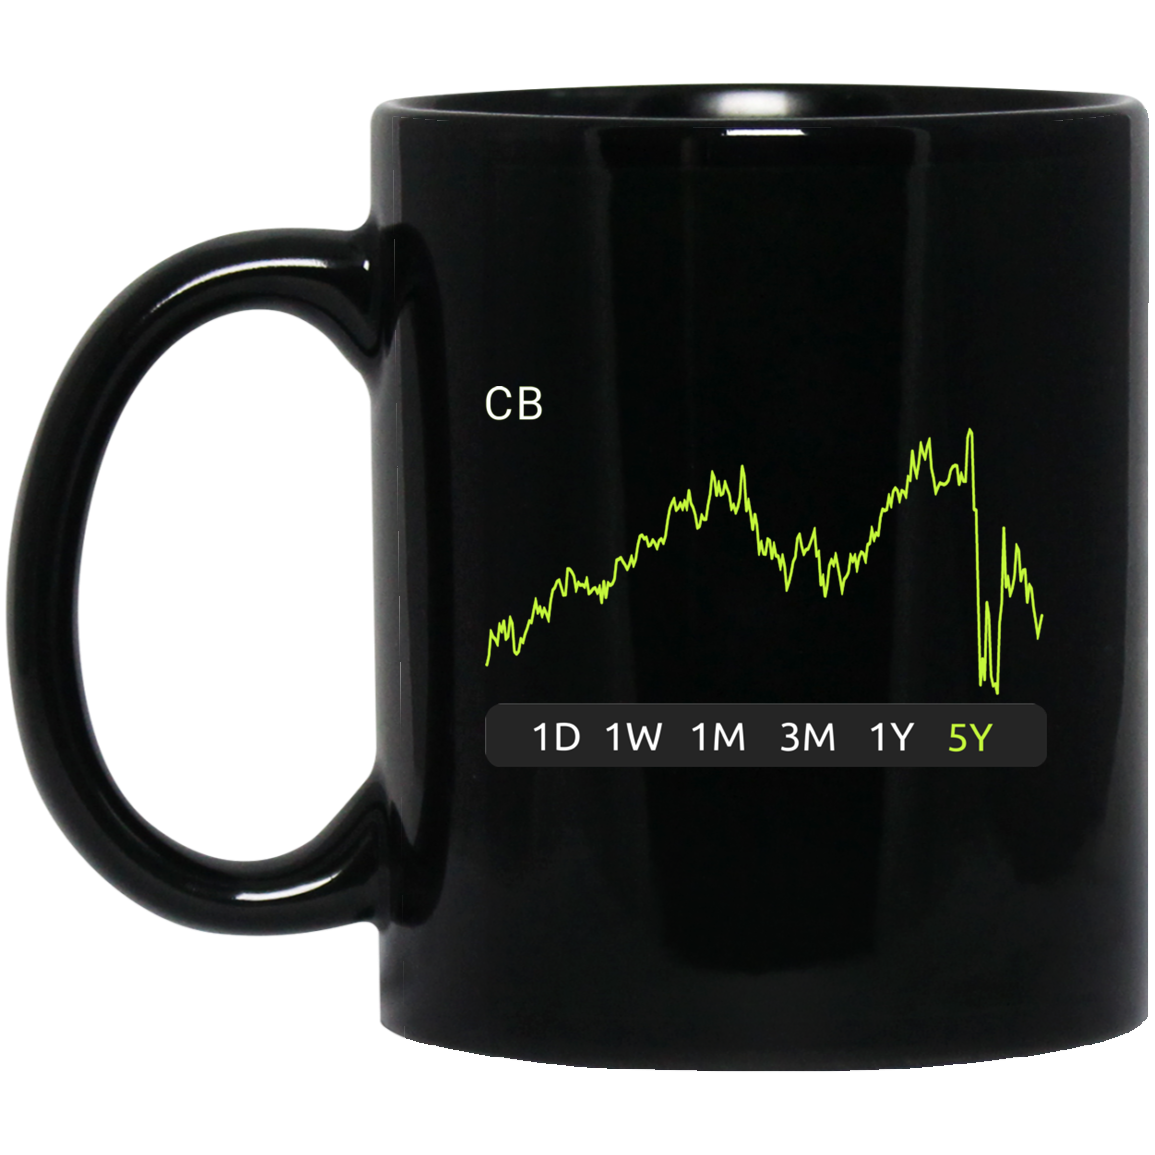 CB Stock 5y Mug